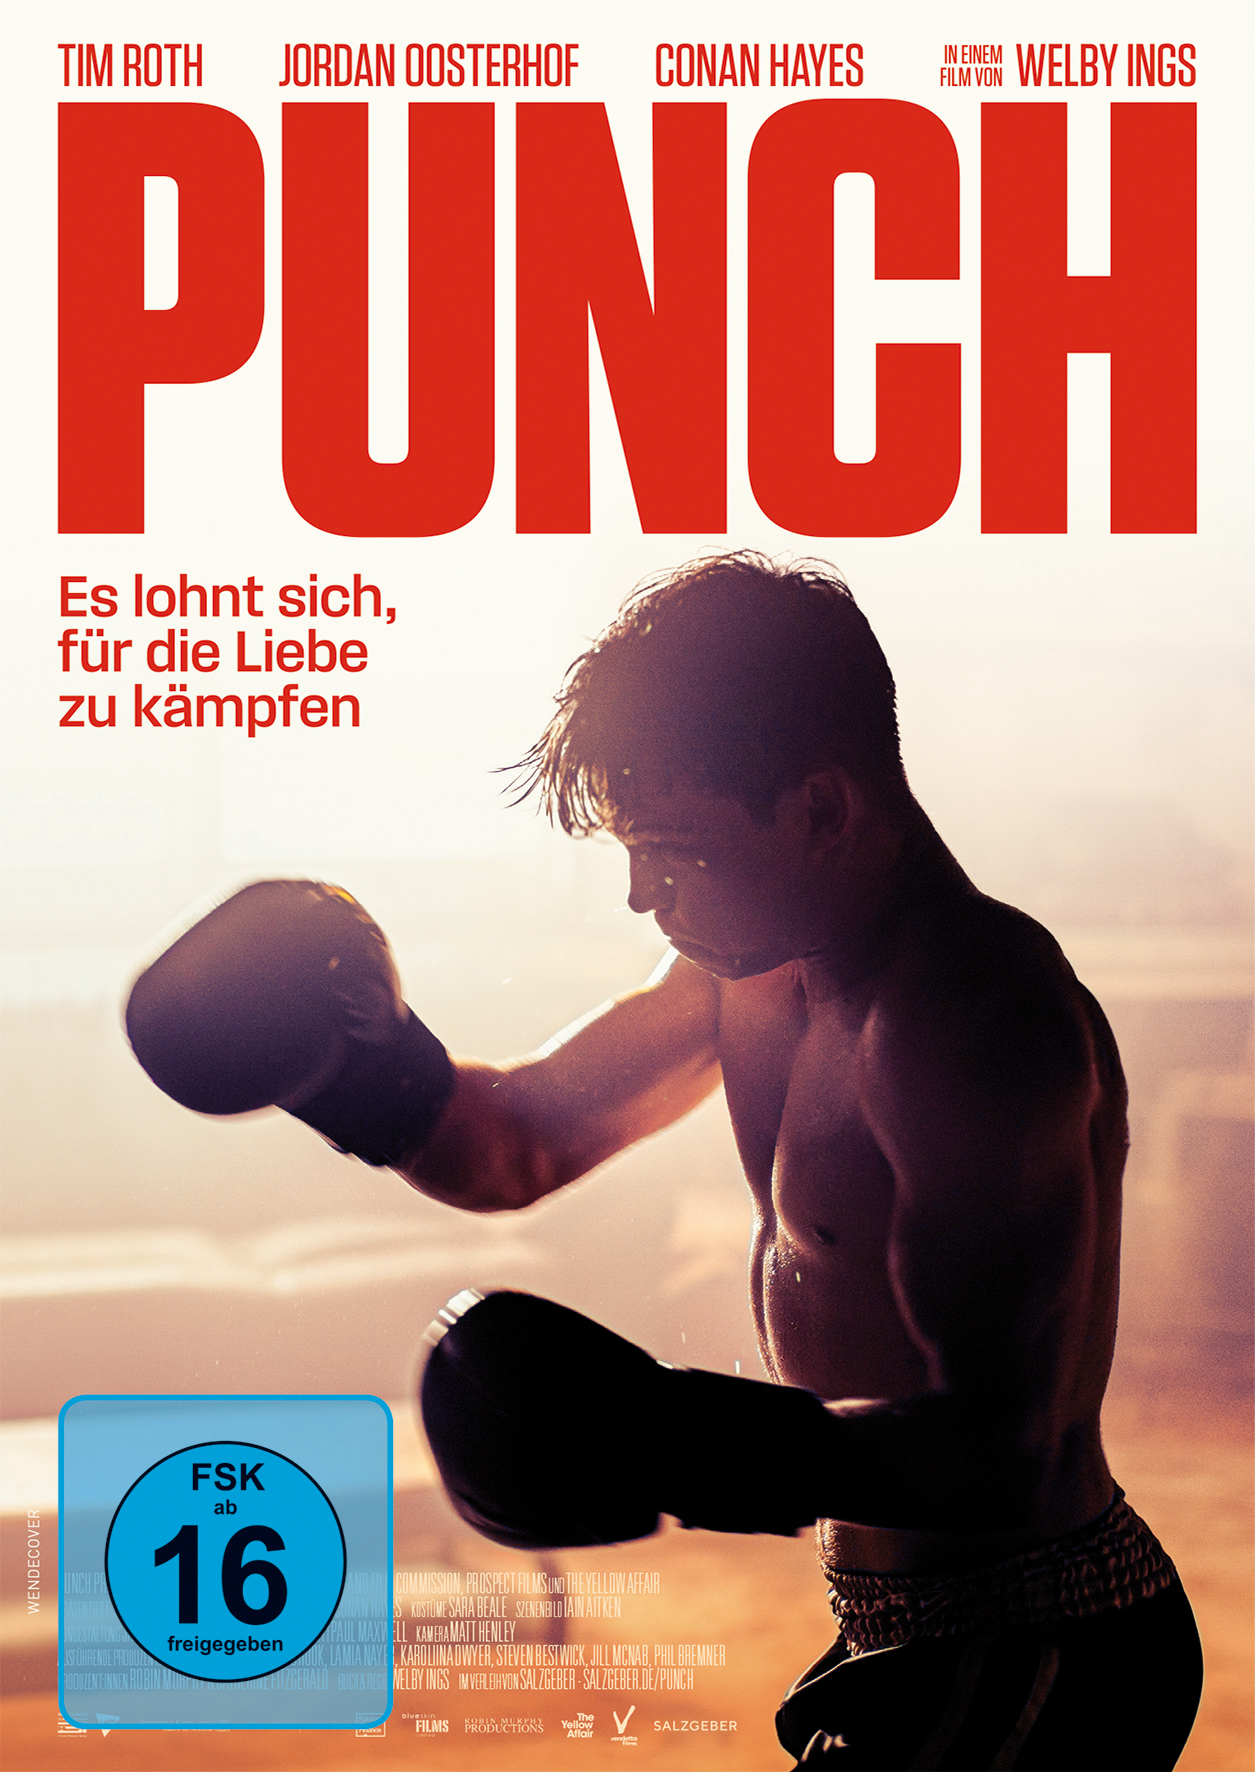 Punch (OmU)